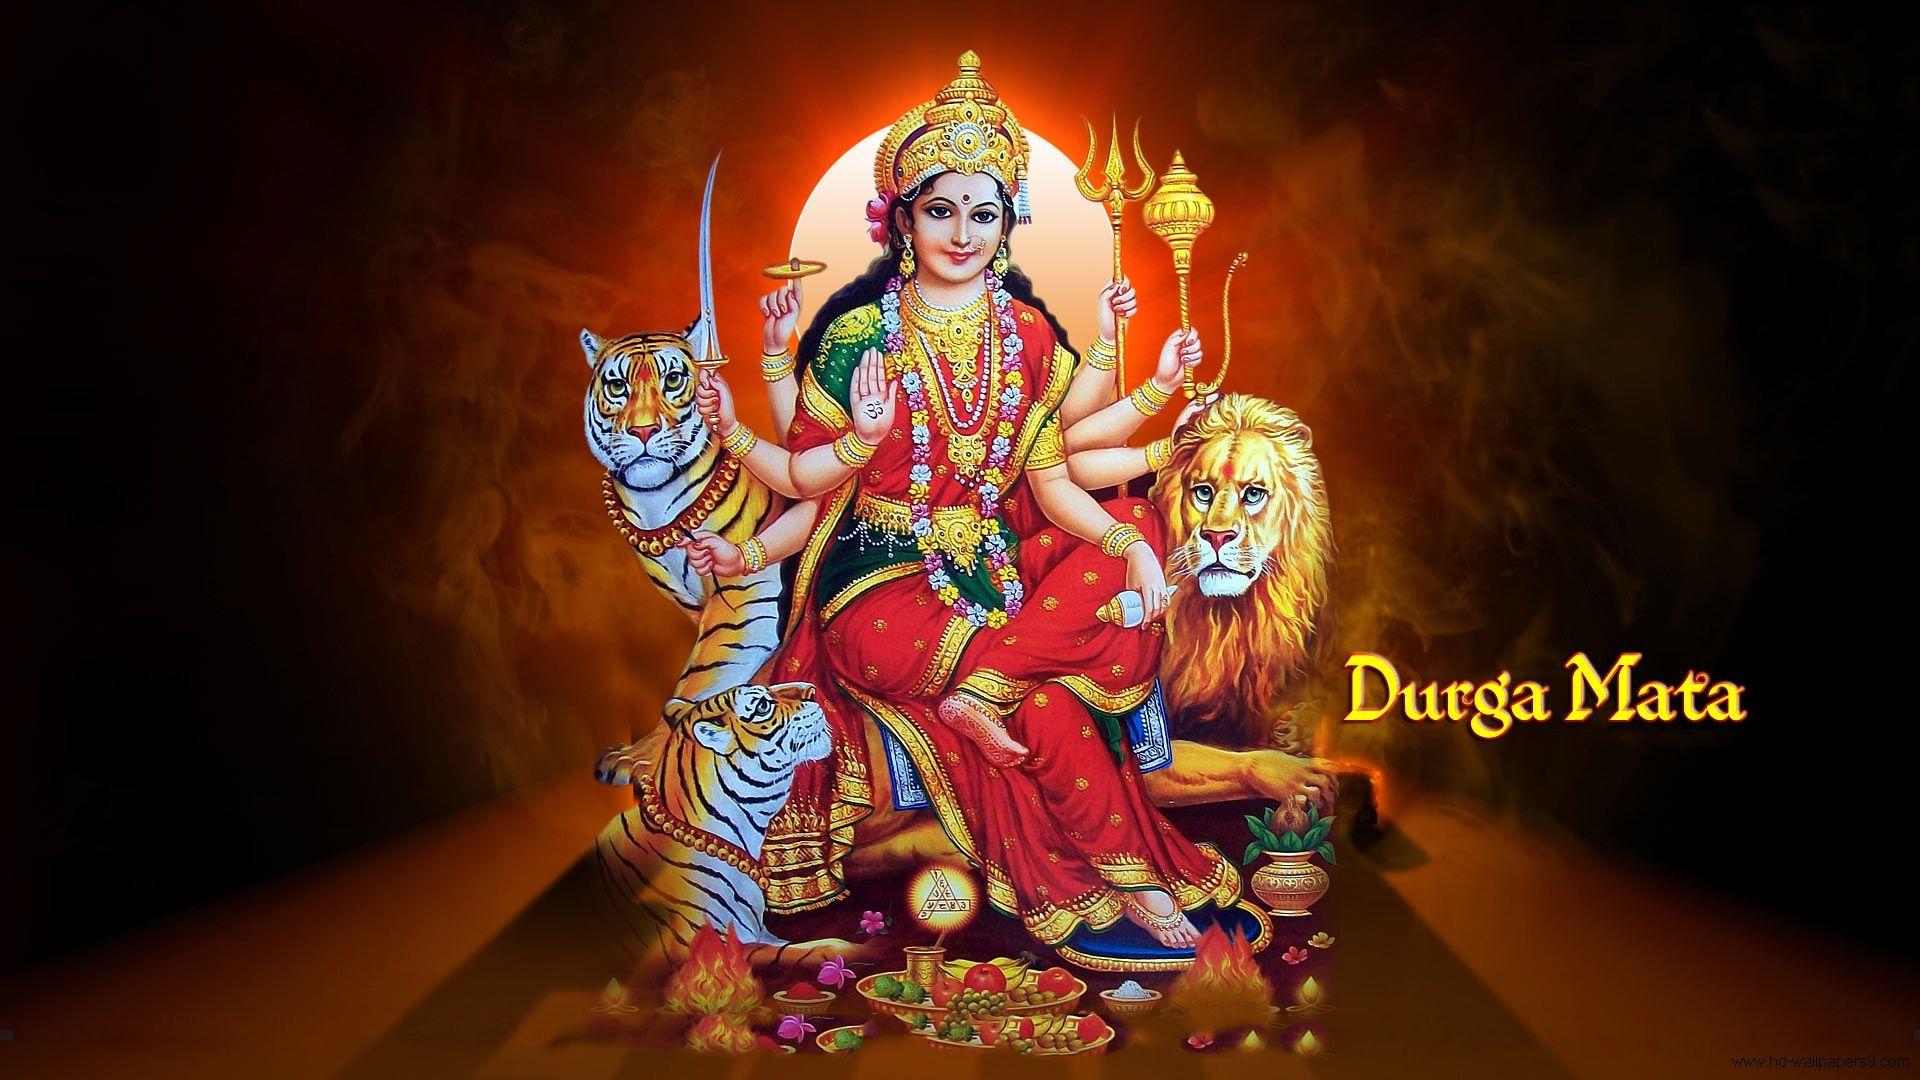 3D hindu god wallpaper for desktop. Free HD Wallpaper Download